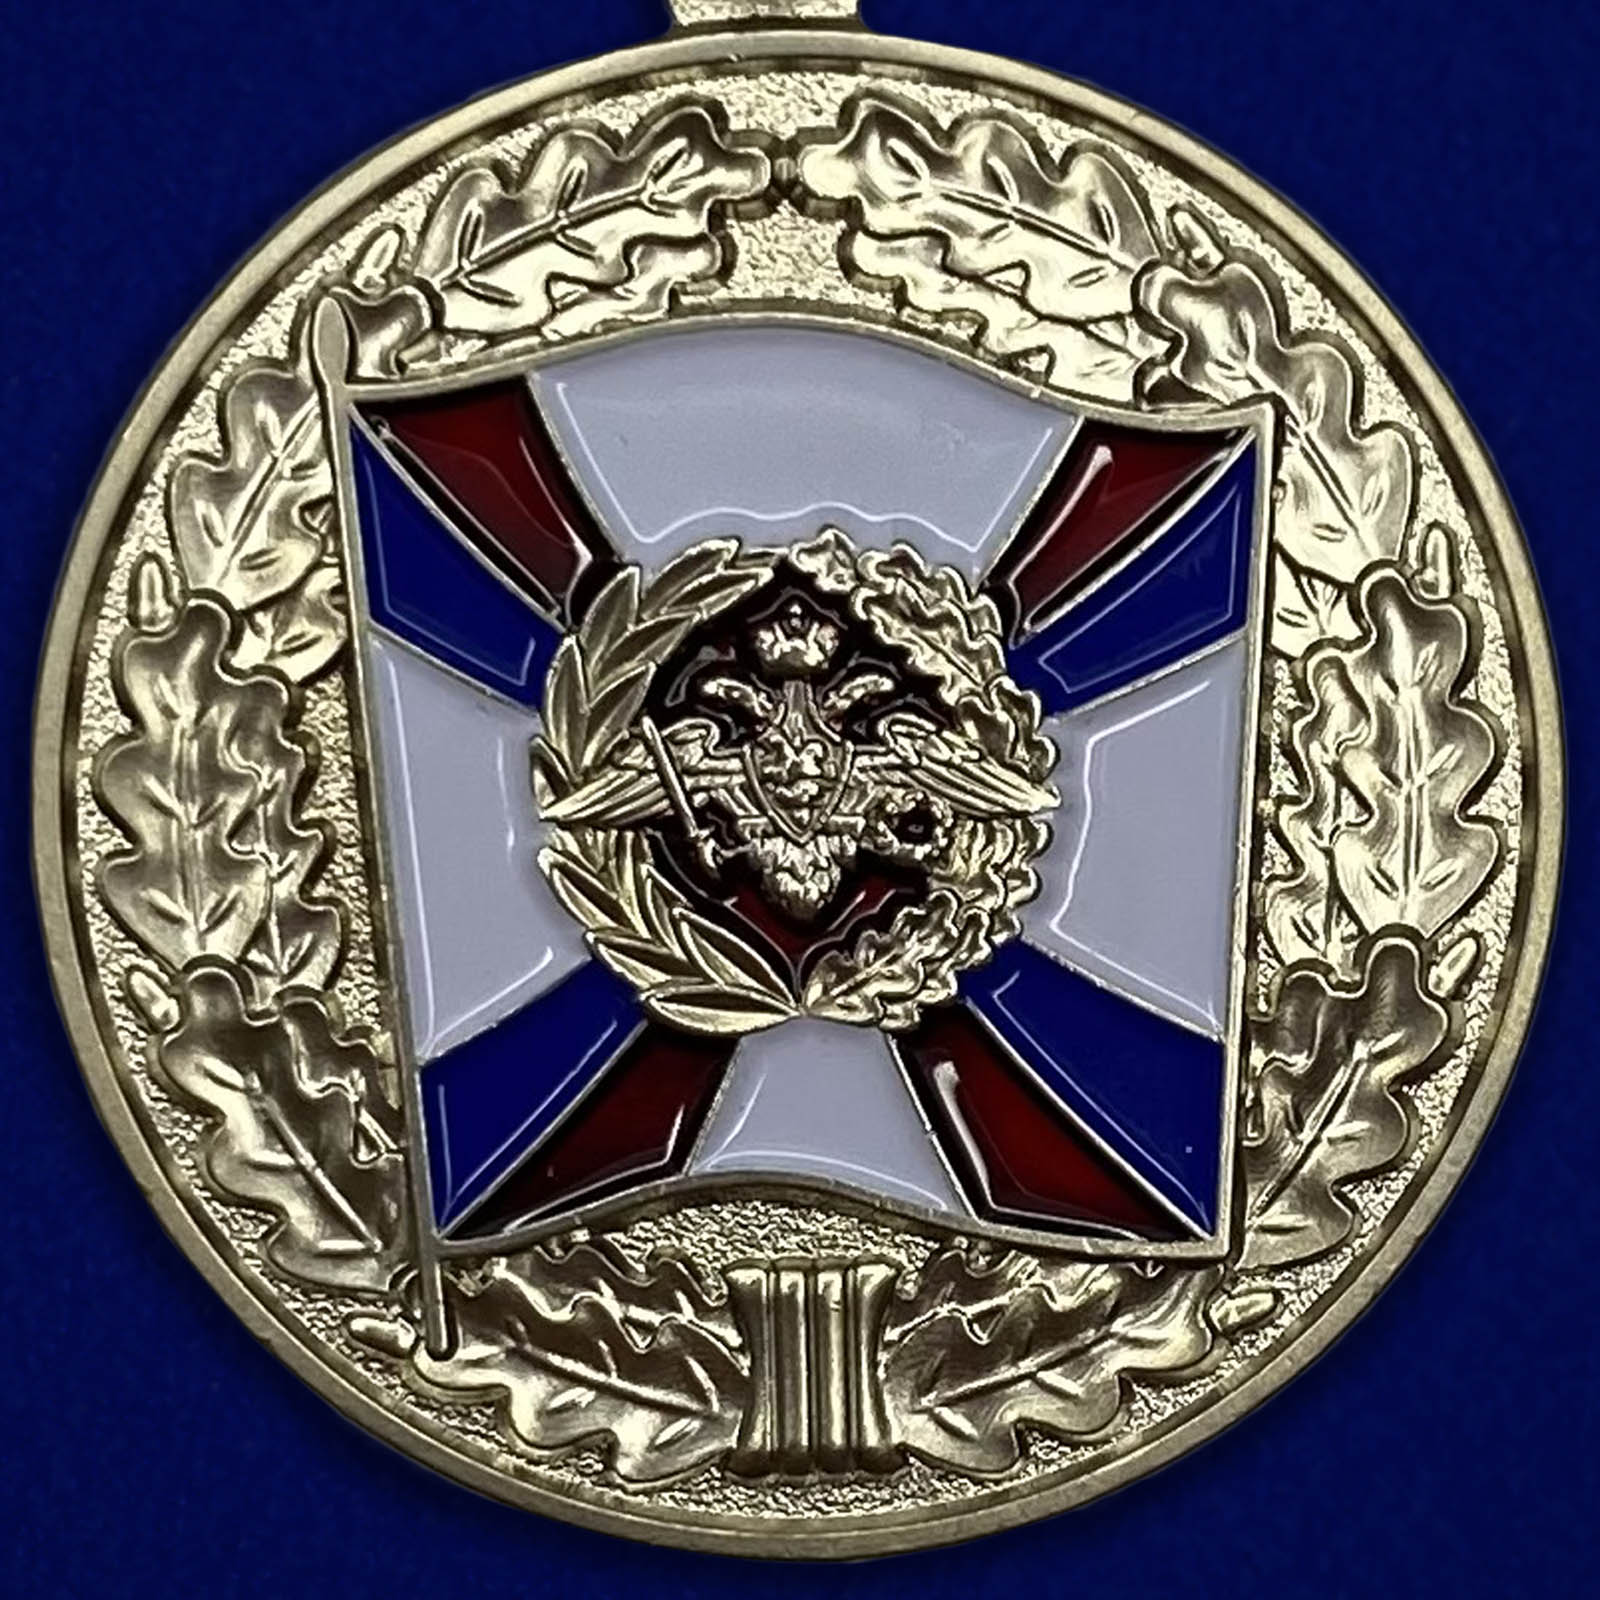 Медаль «За воинскую доблесть» МО РФ 2 степени